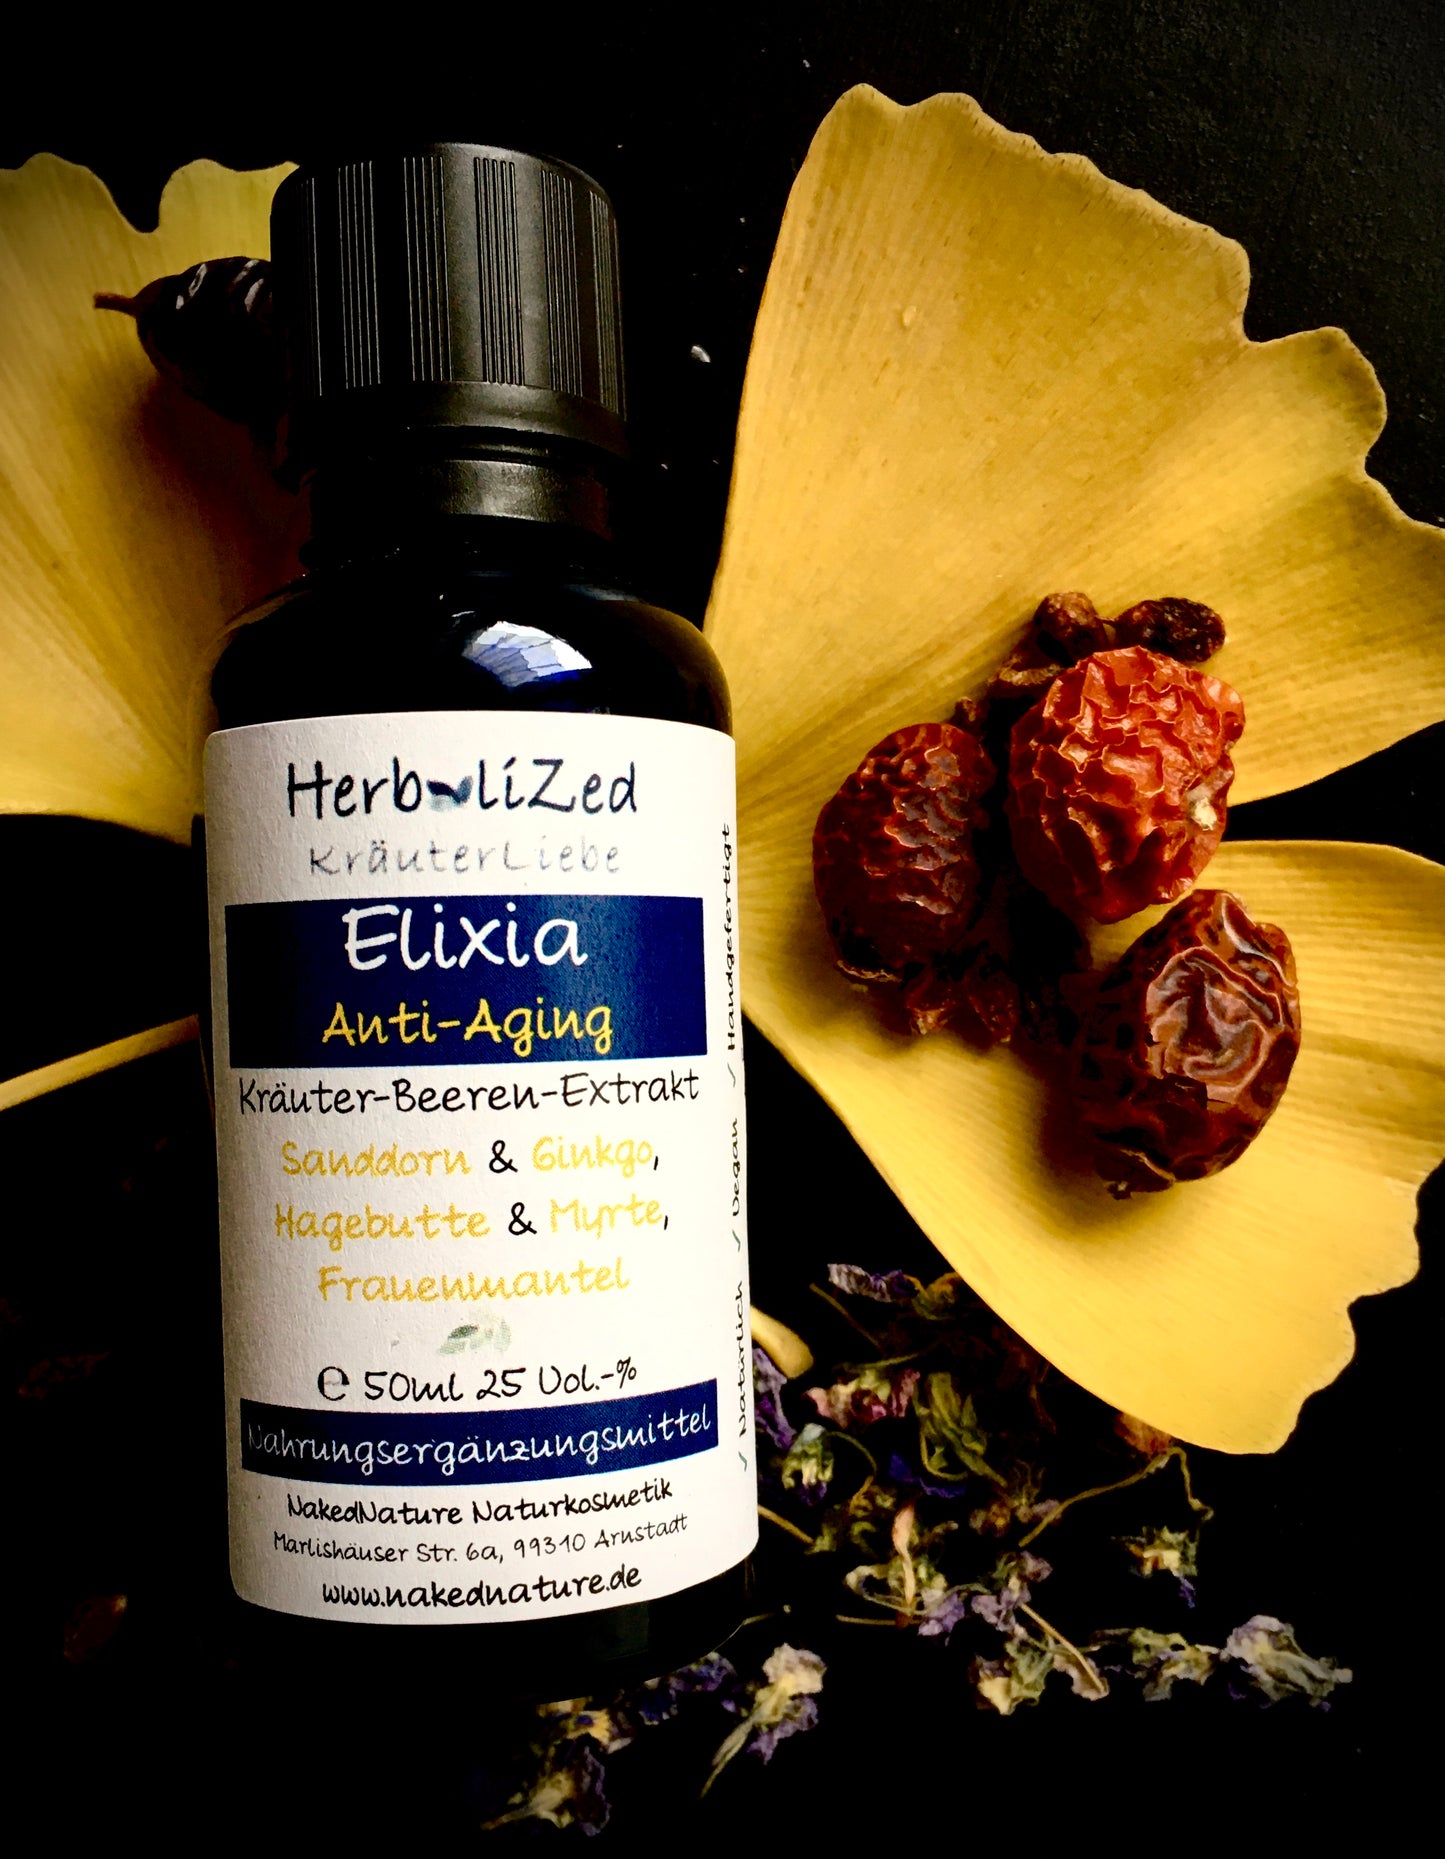 Herbalized Elixia Anti-Aging, Kräuterextrakt, 50ml